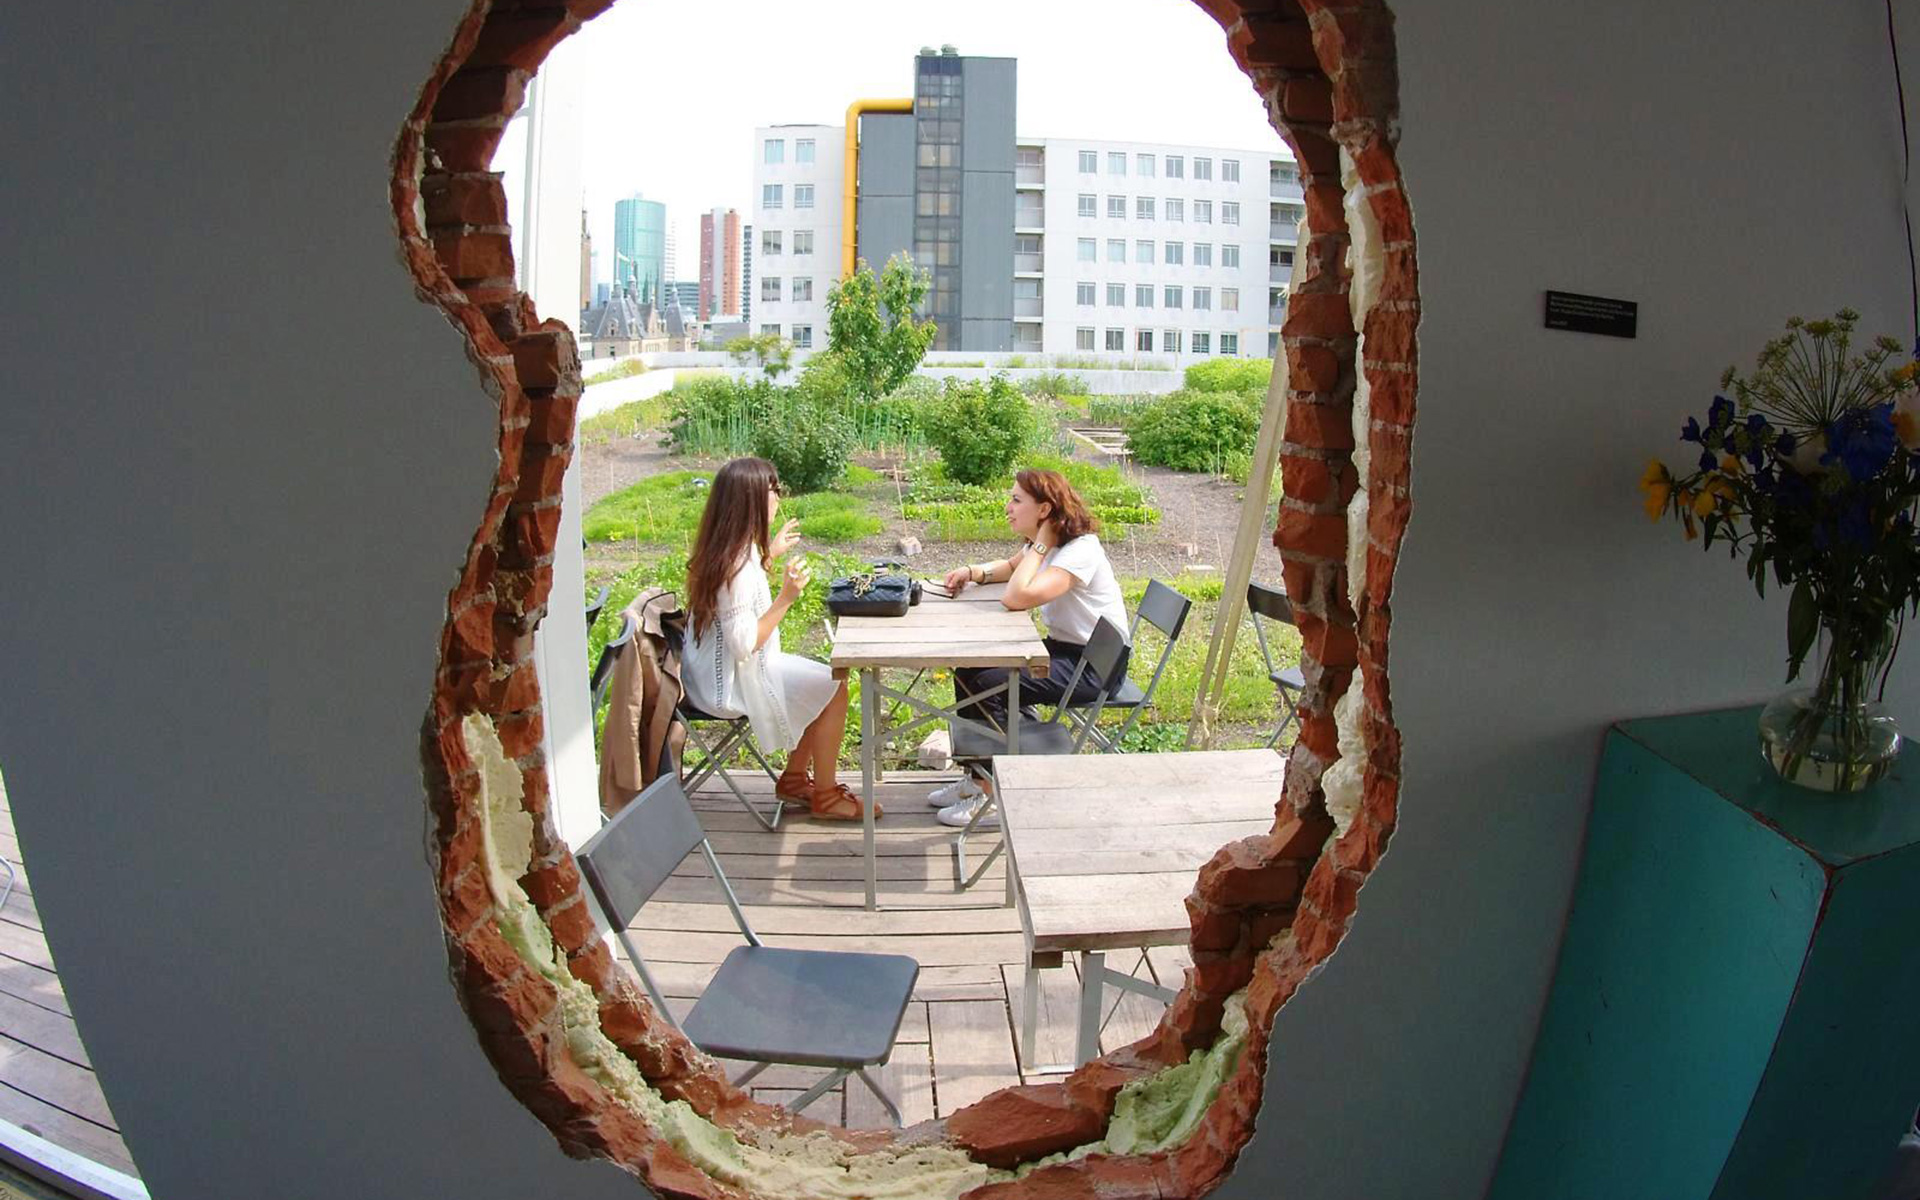 Durch ein Loch in der Wand können Gäste im Rotterdamer Dachterrassencafé Op het Dak von innen auf den Garten des Lokals schauen.